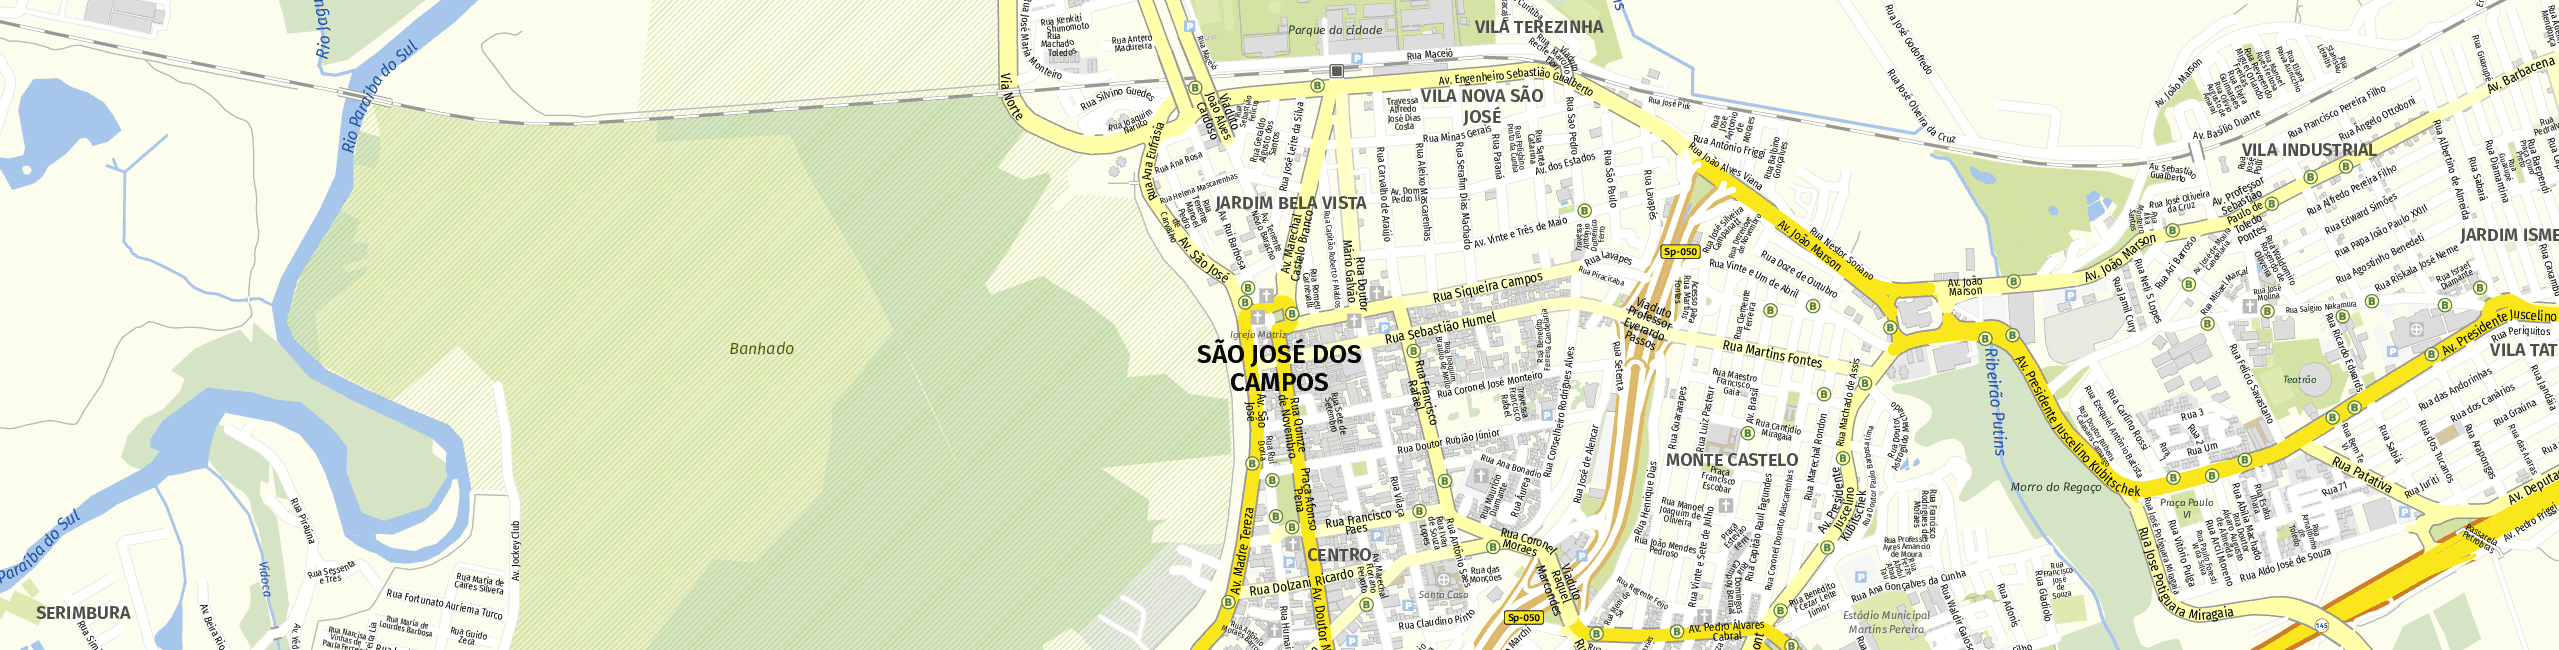 Stadtplan São José dos Campos zum Downloaden.